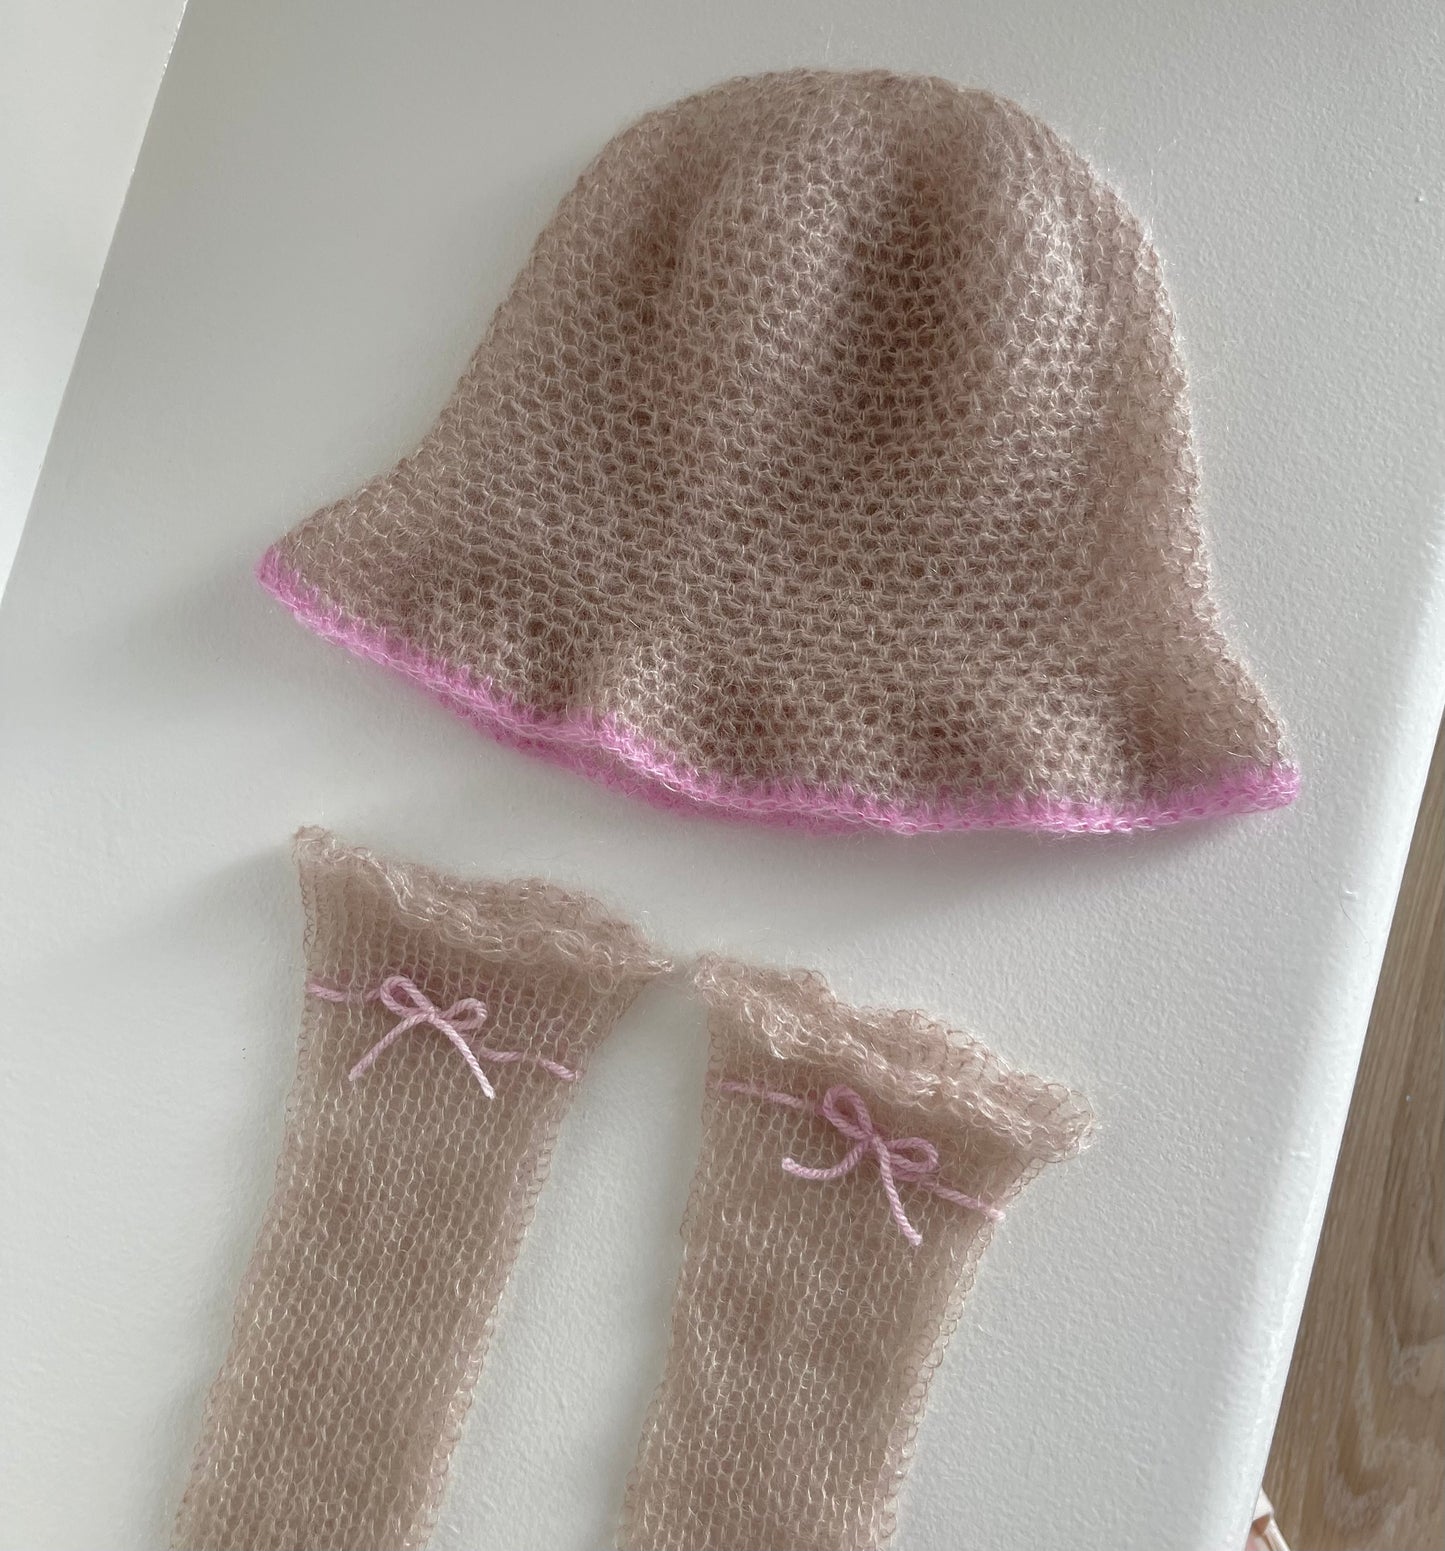 Handmade crochet mohair bucket hat in beige with baby pink trim